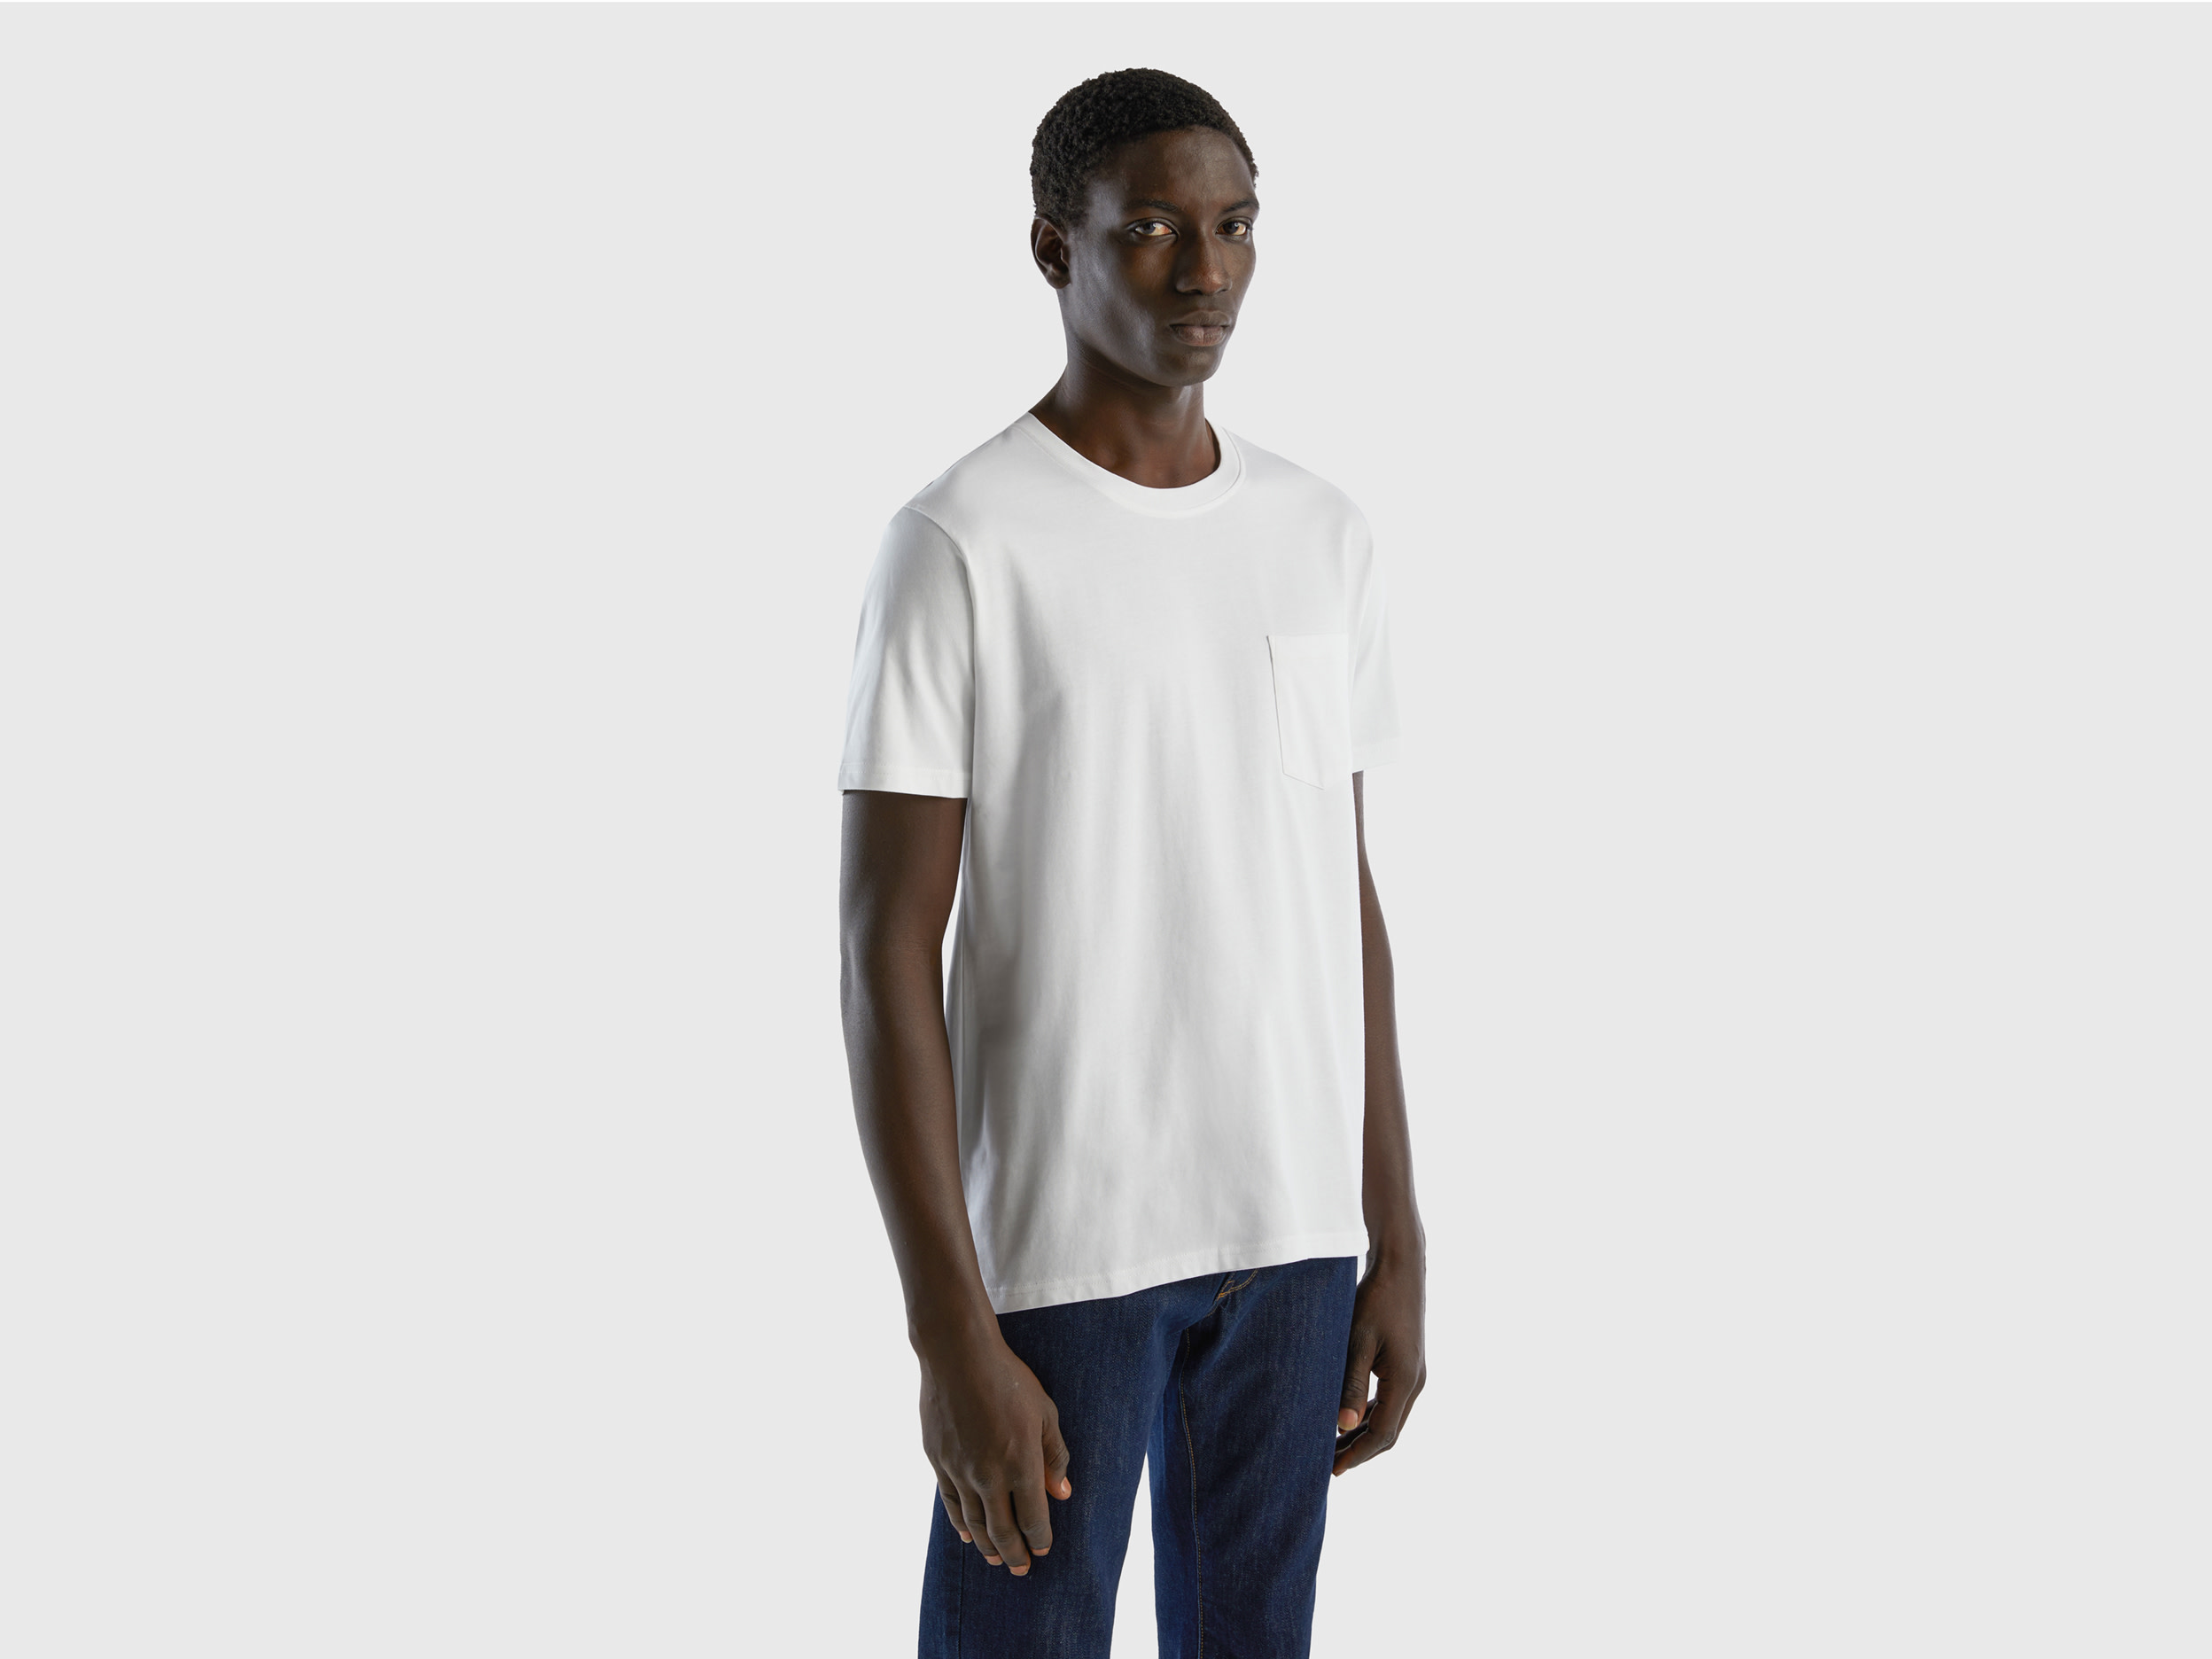 Benetton, 100% Cotton T-shirt With Pocket, size XL, White, Men